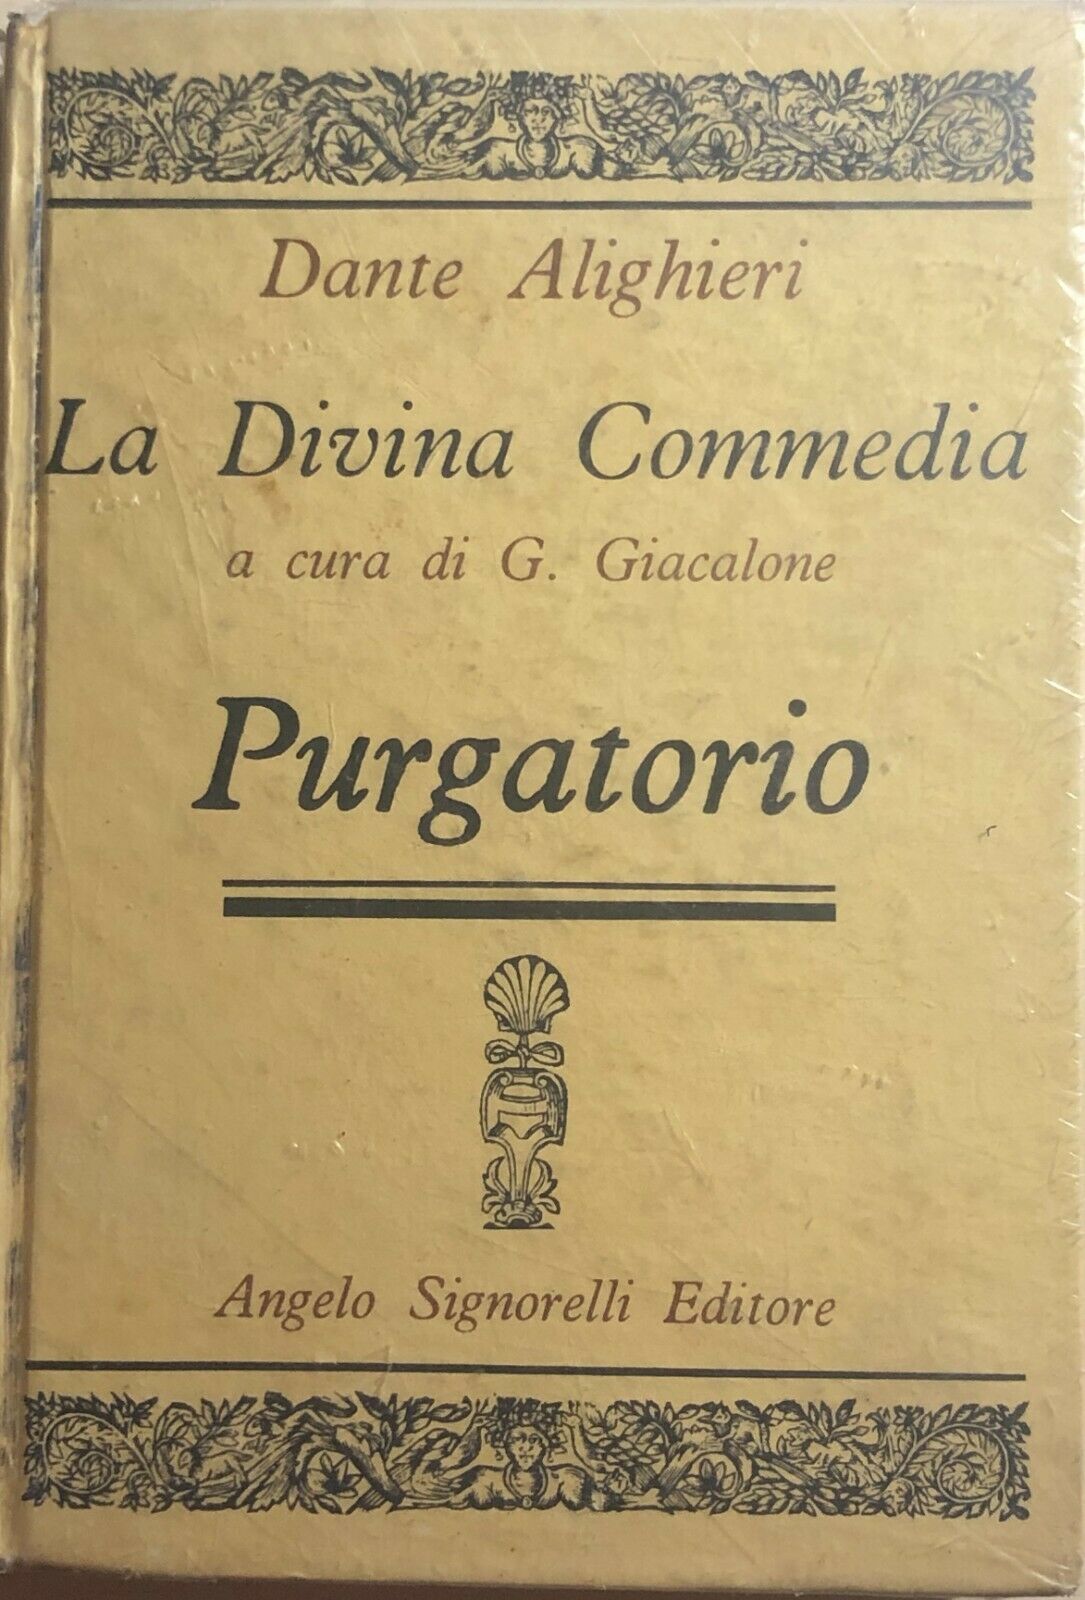 La Divina Commedia di Dante Alighieri - Purgatorio di G. Giacalone, 1985, Signor